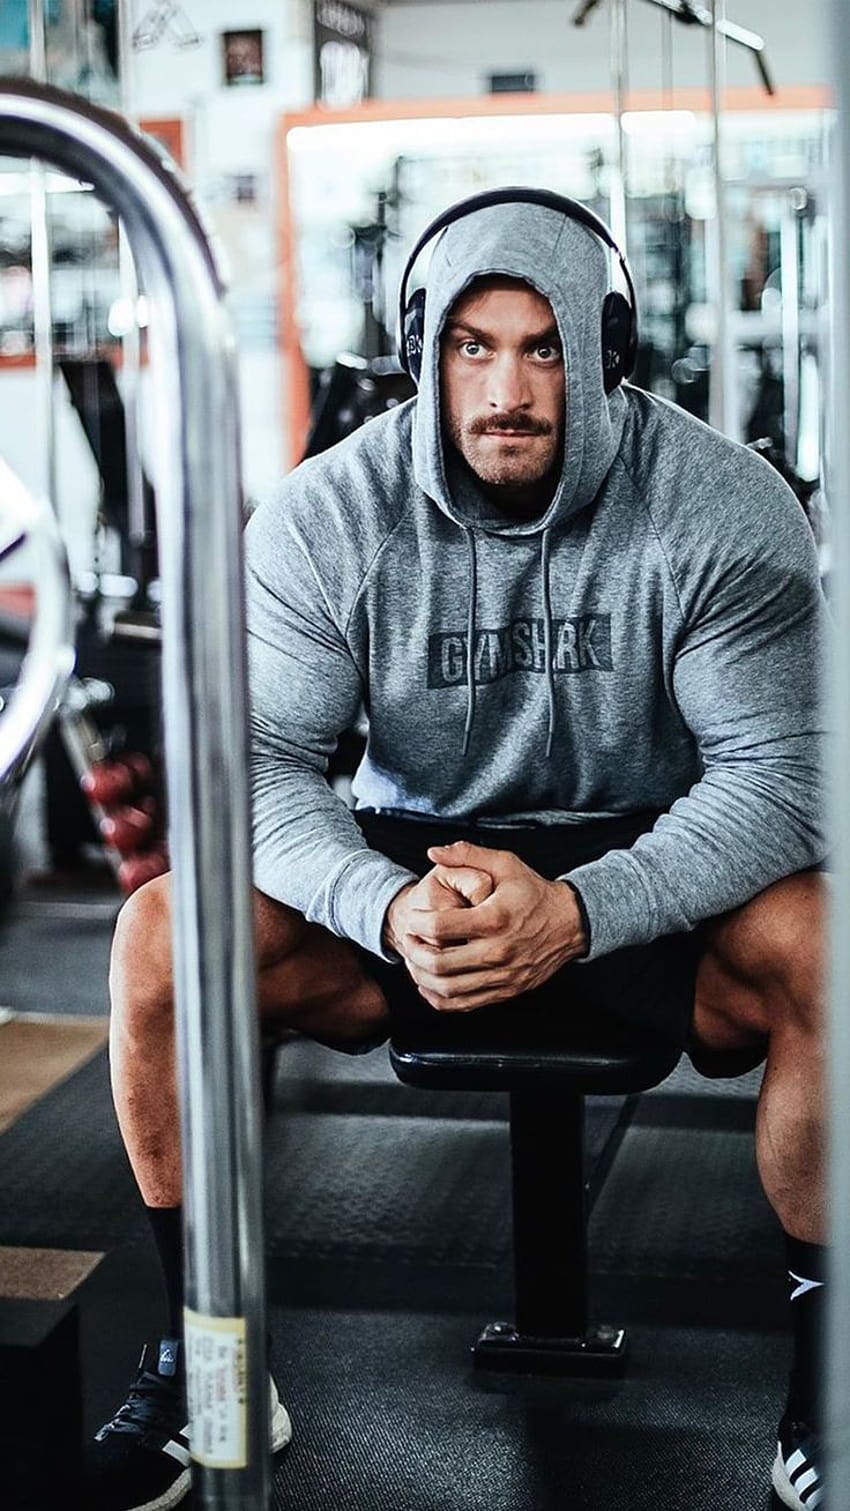 Why people wear hoodies in the gym? | by Ren Bucanegg | Medium